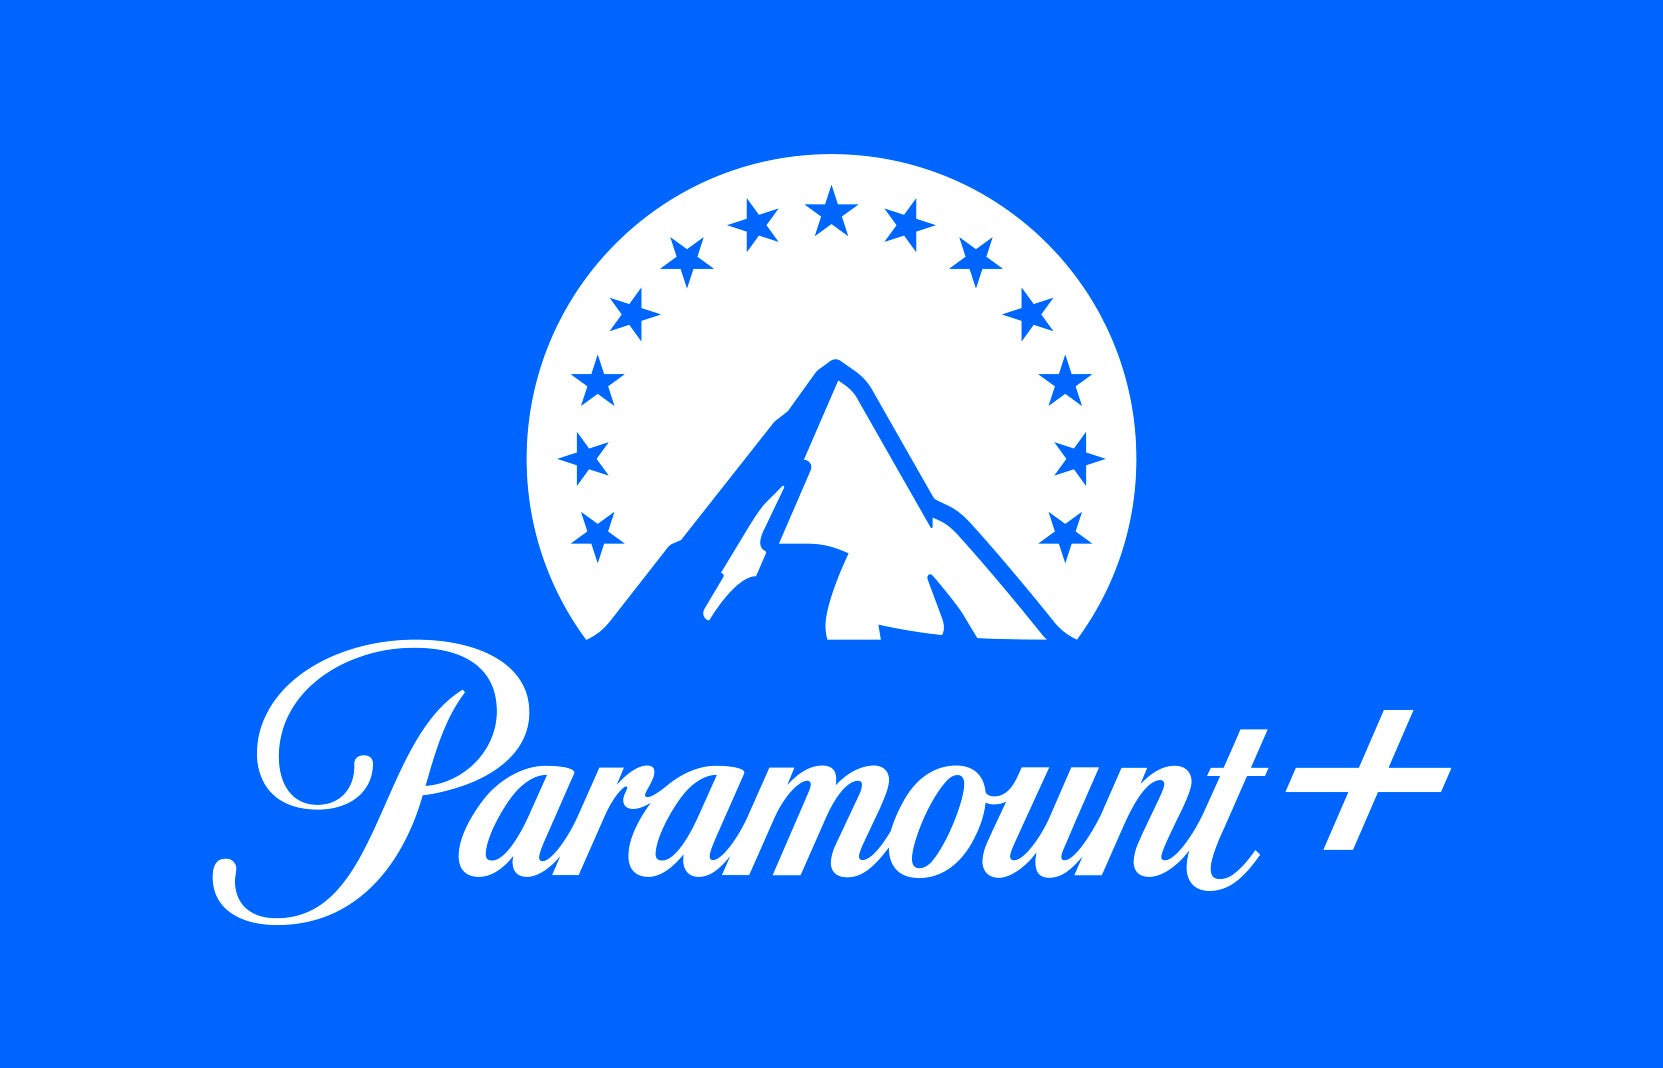 Paramount+ | 2022 começa com estreias imperdíveis e conteúdos exclusivos na plataforma